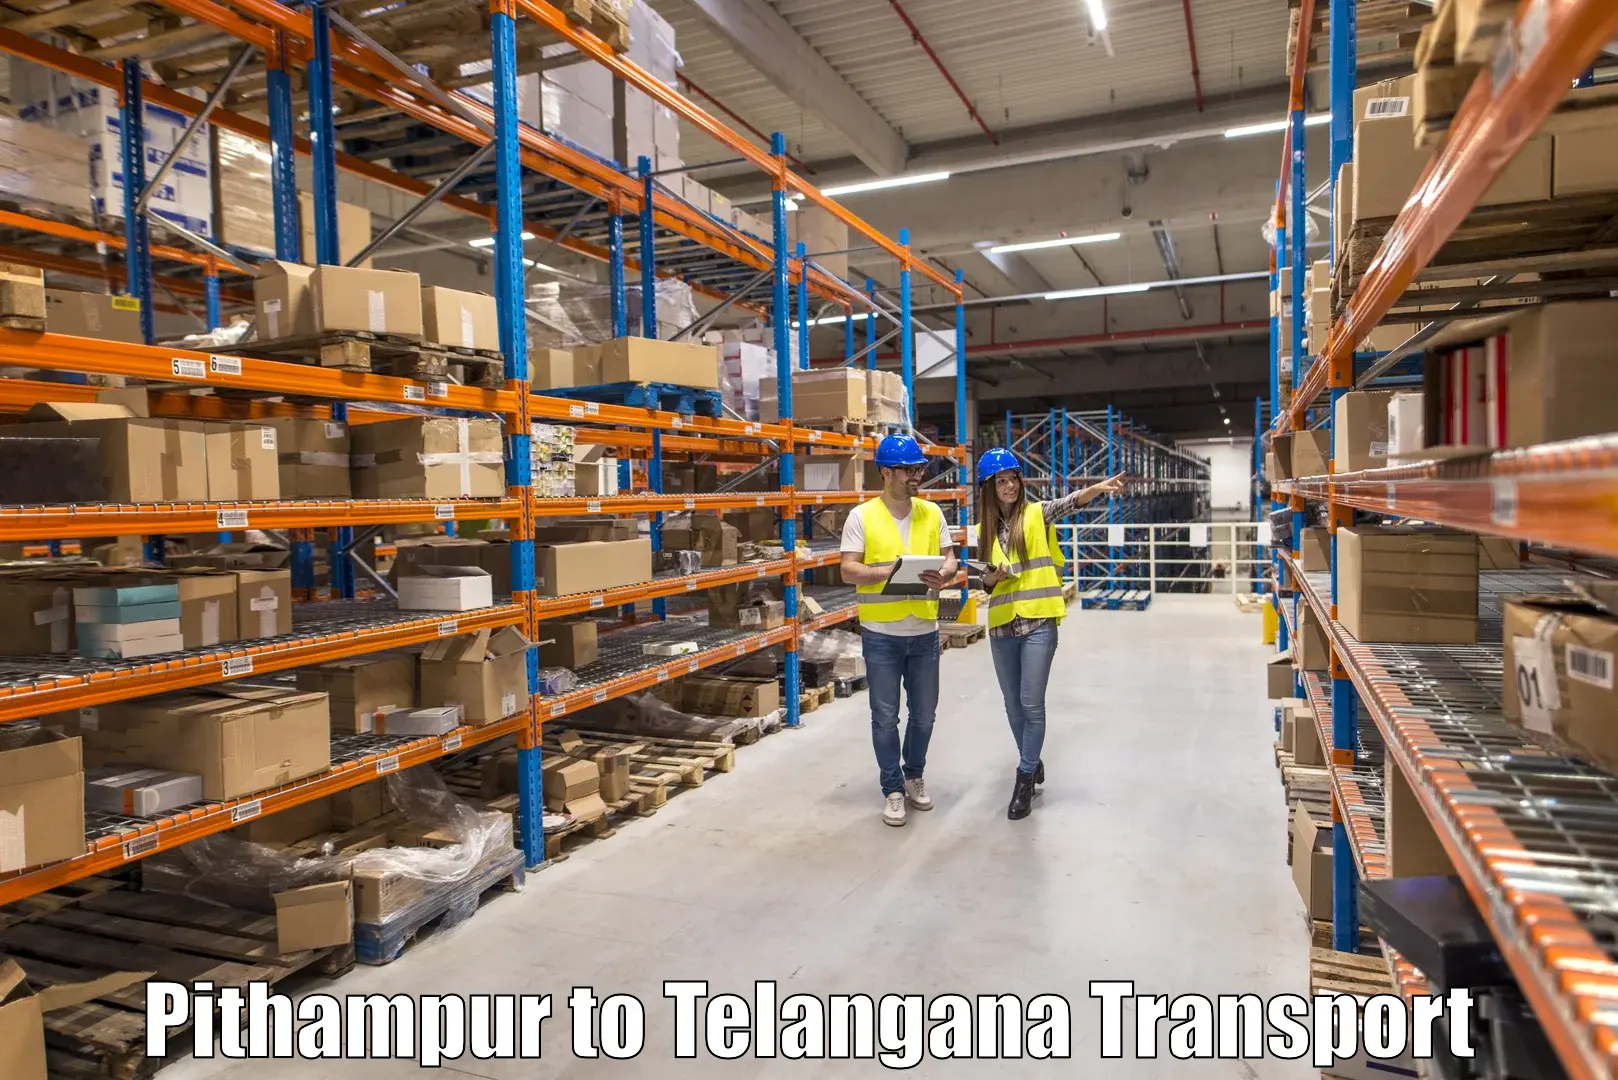 Vehicle parcel service Pithampur to Gangadhara